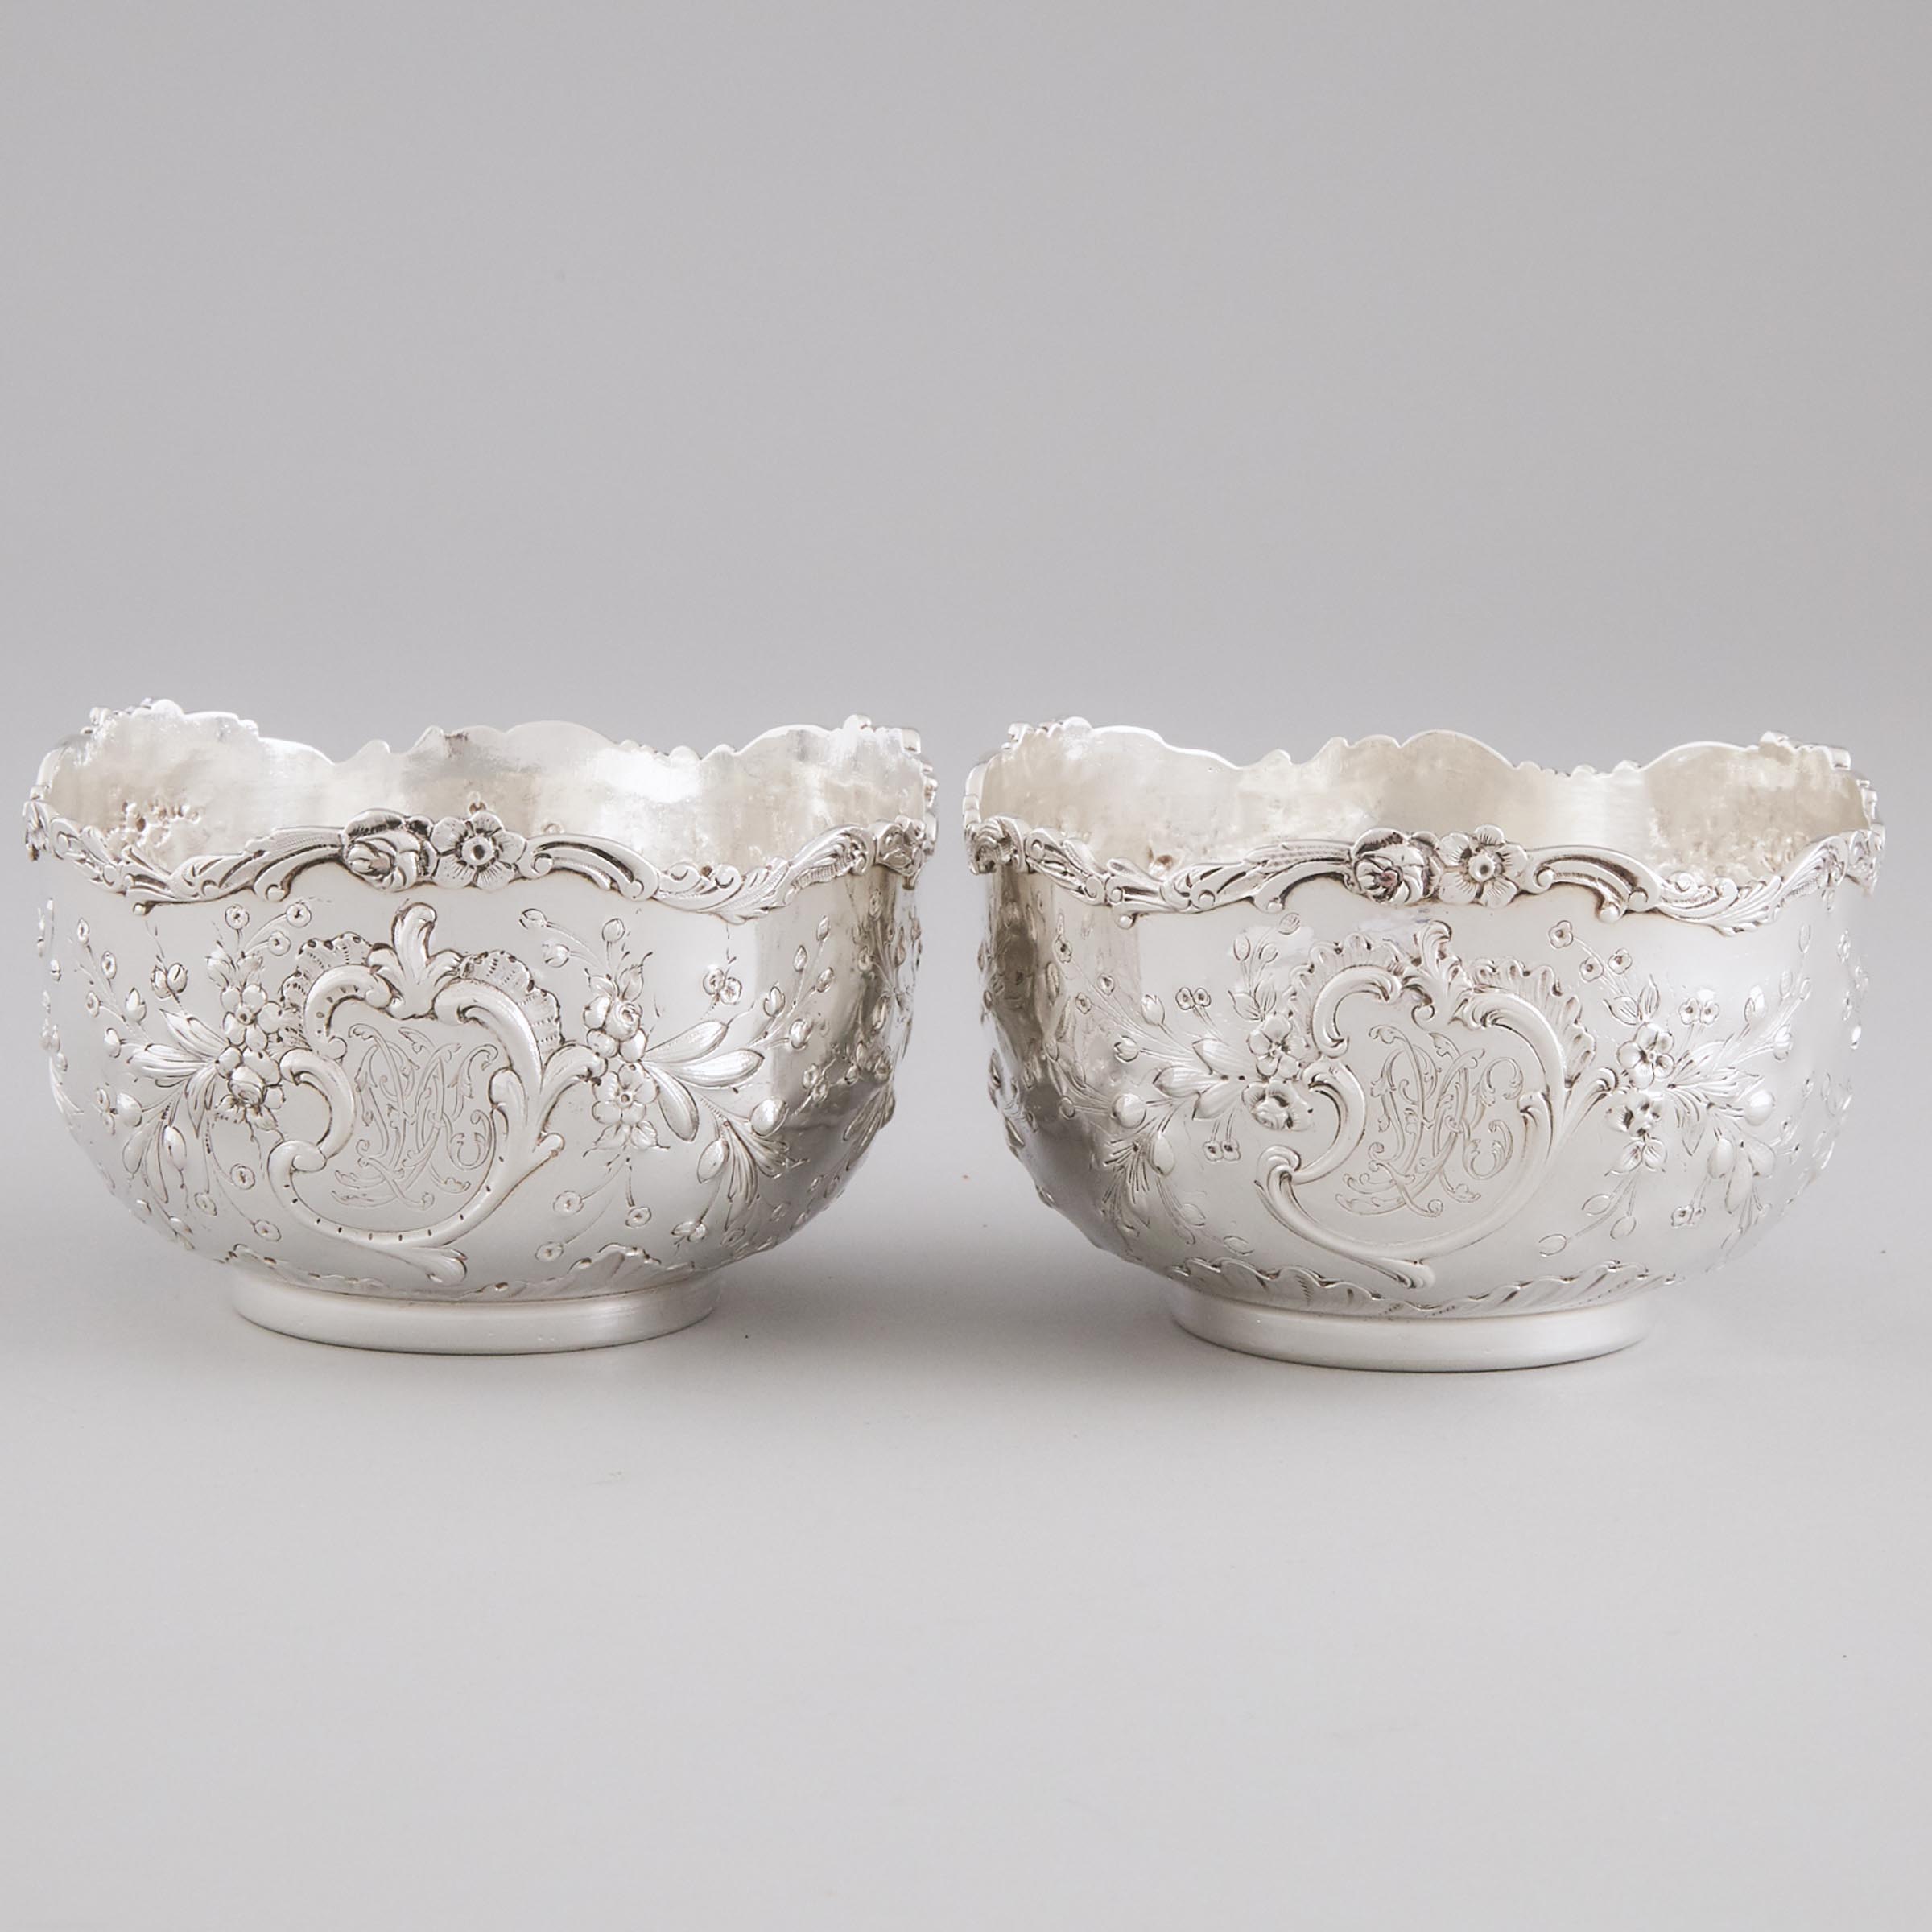 Pair of French Silver Finger Bowls, Emile Delaire, Paris, c.1900